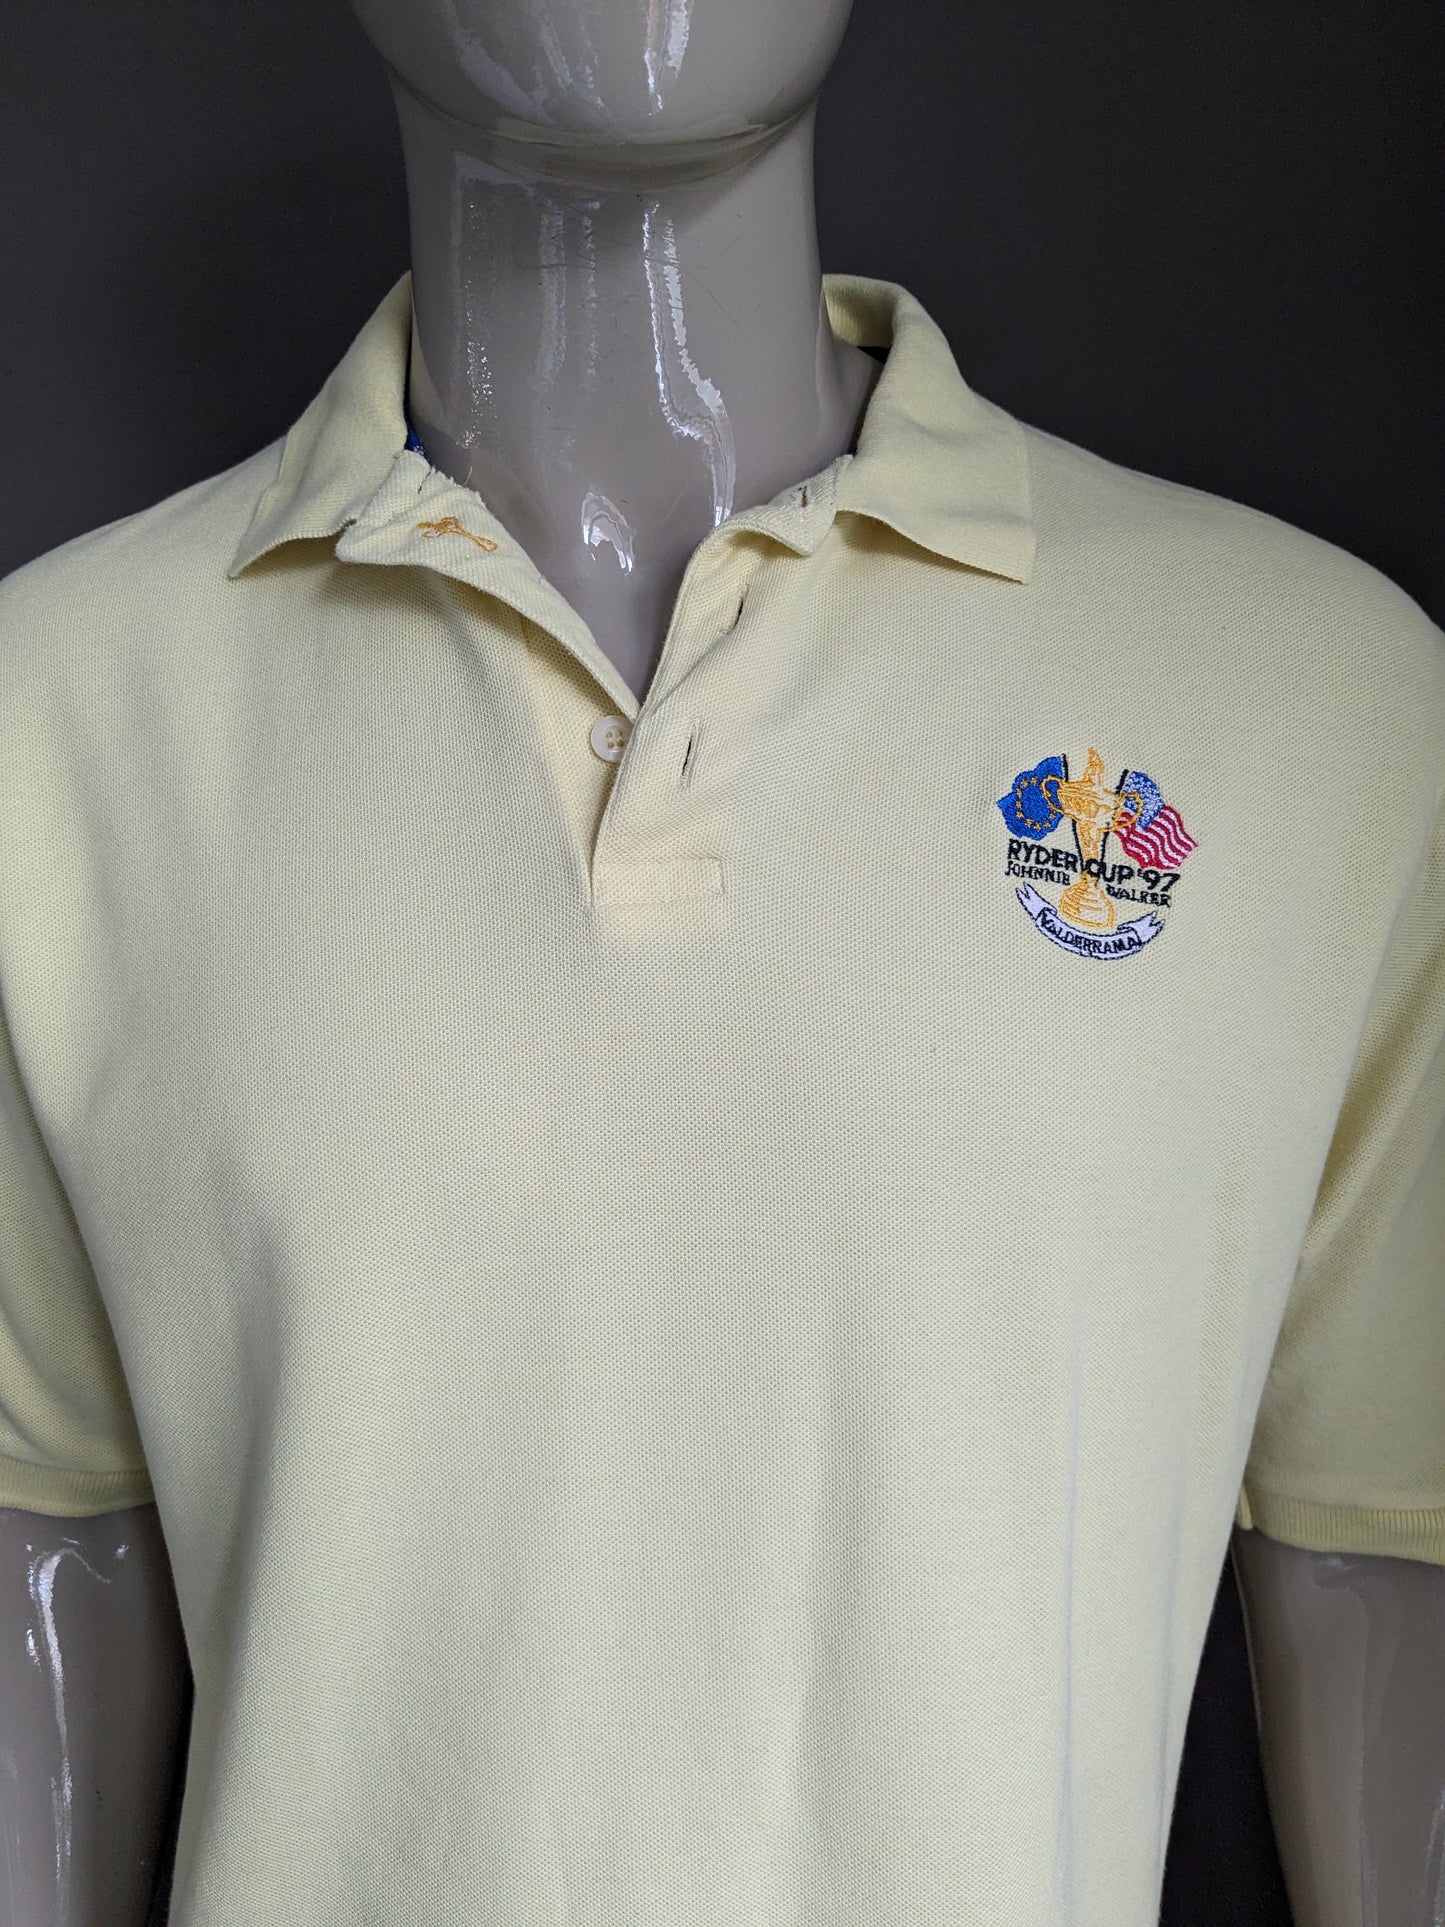 Polo vintage Glenmuir "Ryder Cup 97". Colore giallo chiaro. Taglia L.